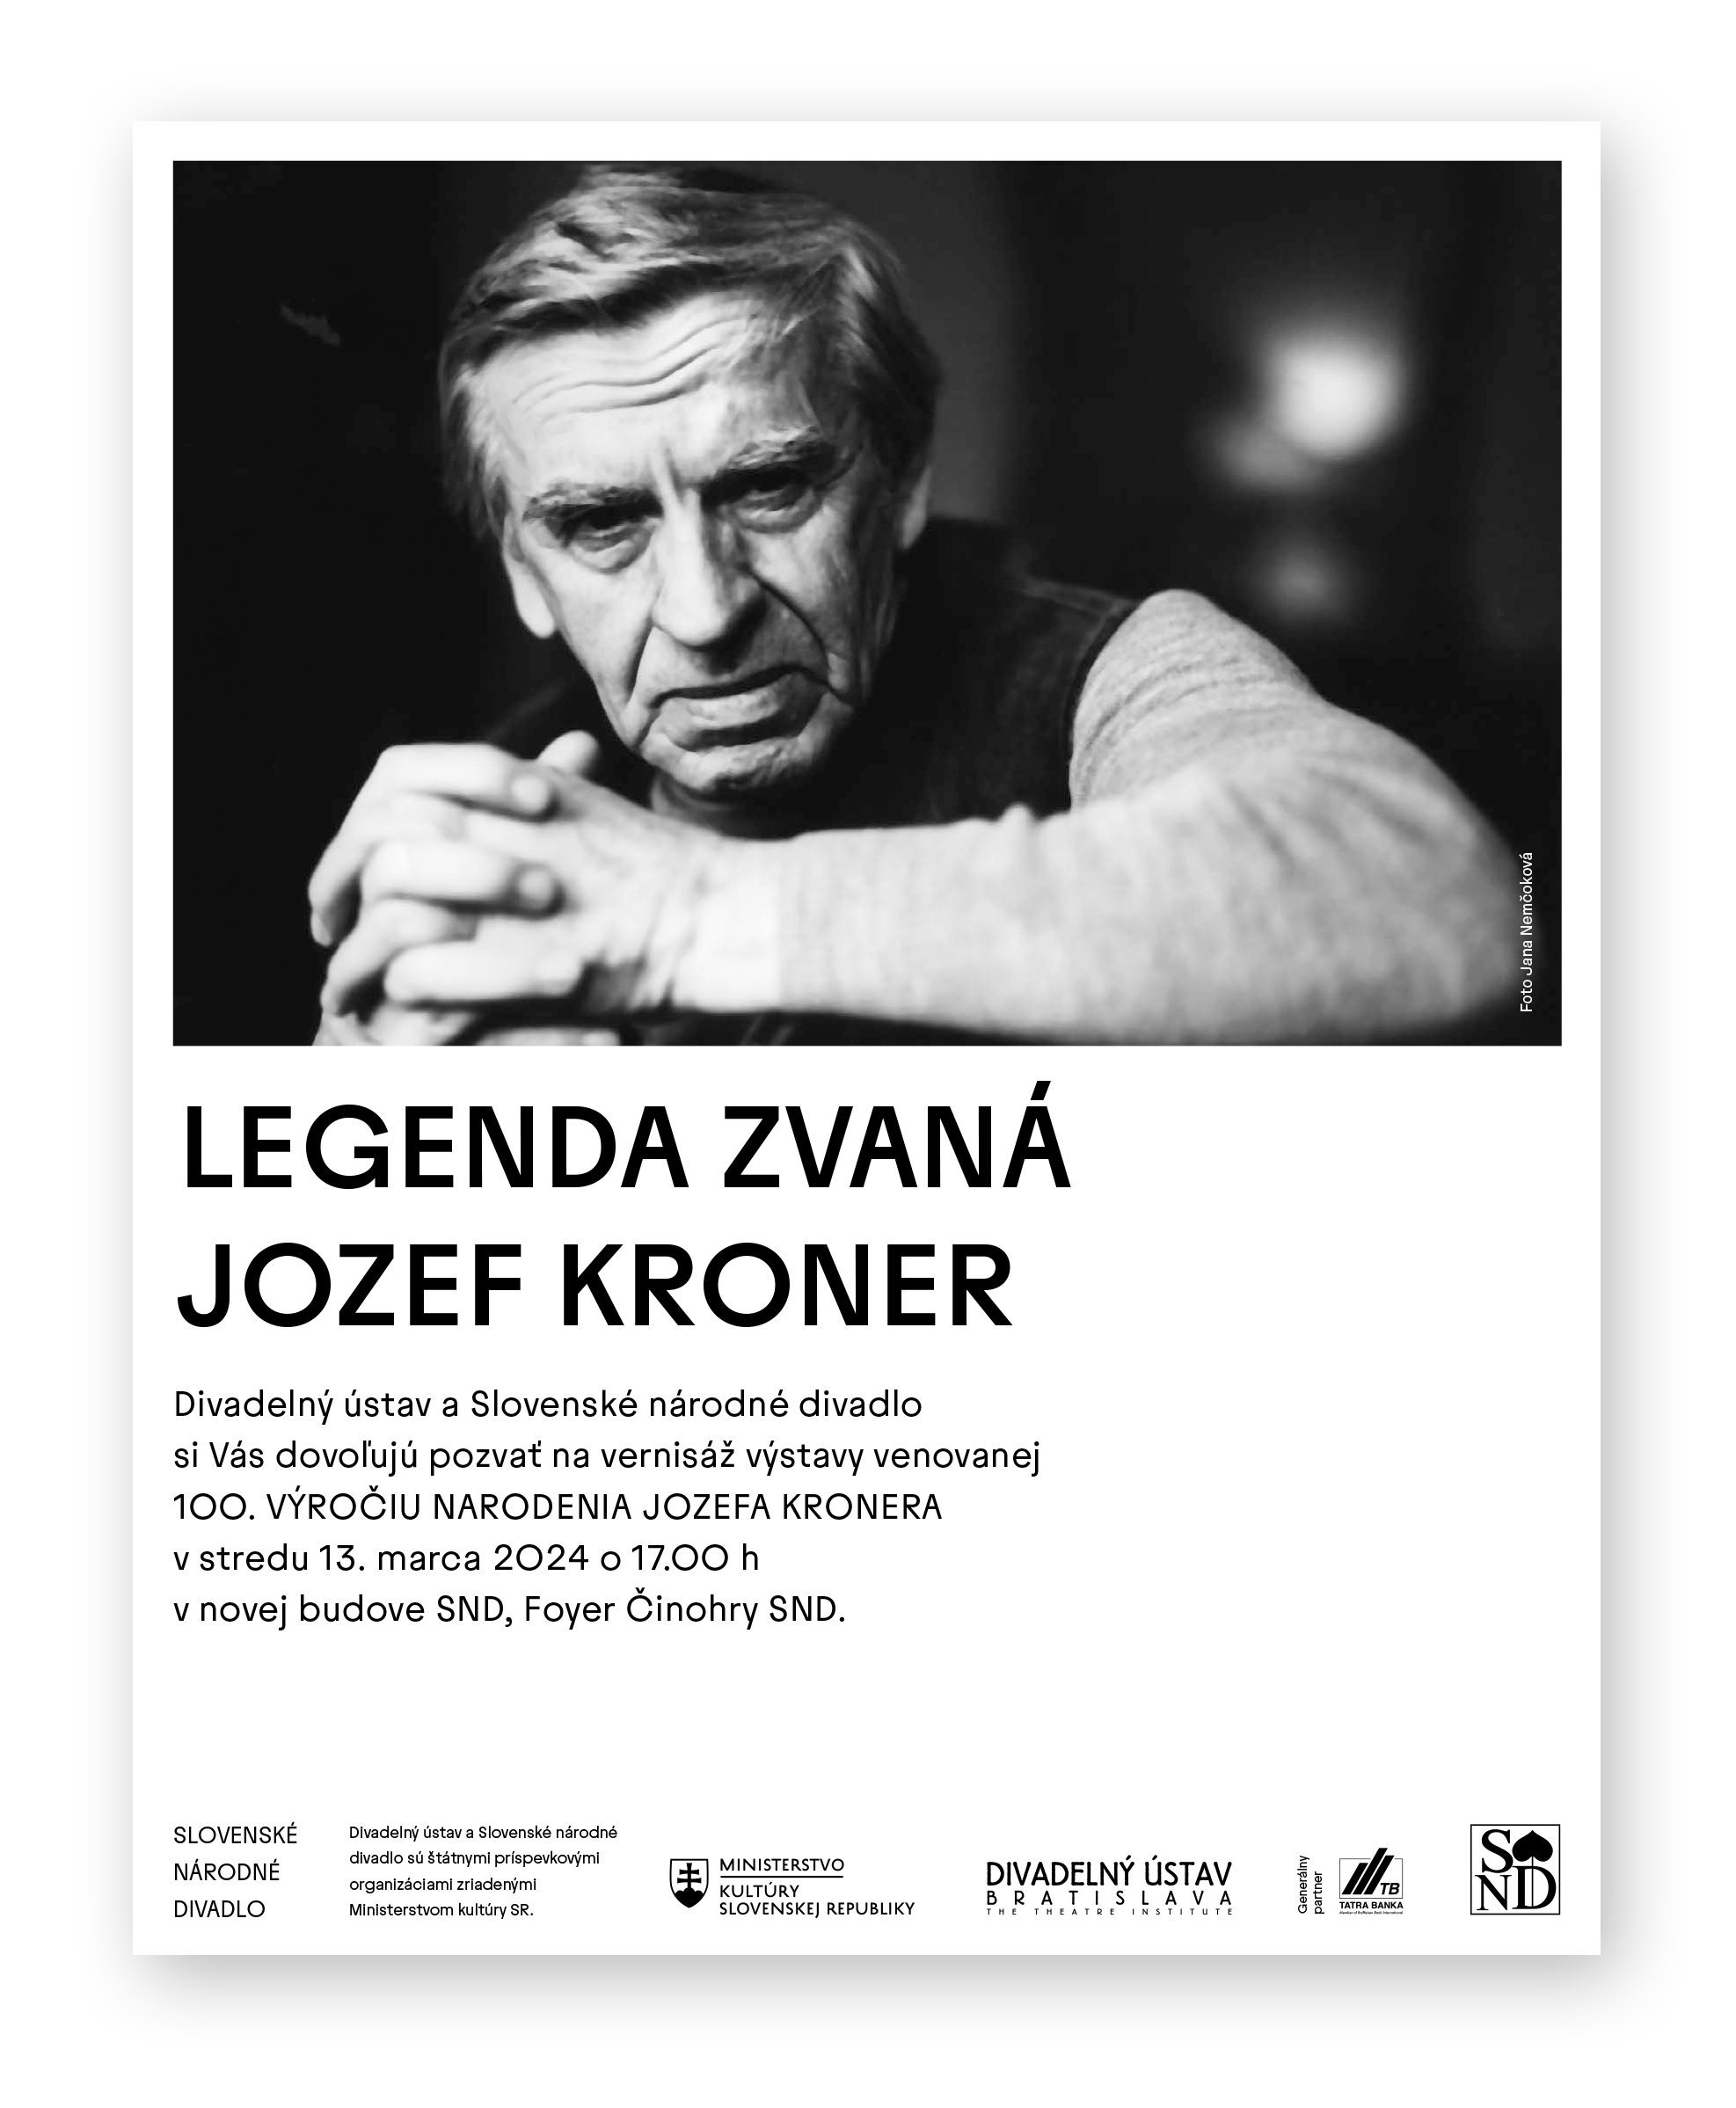 Divadelný ústav a SND vás pozývajú na vernisáž výstavy Legenda zvaná Jozef Kroner